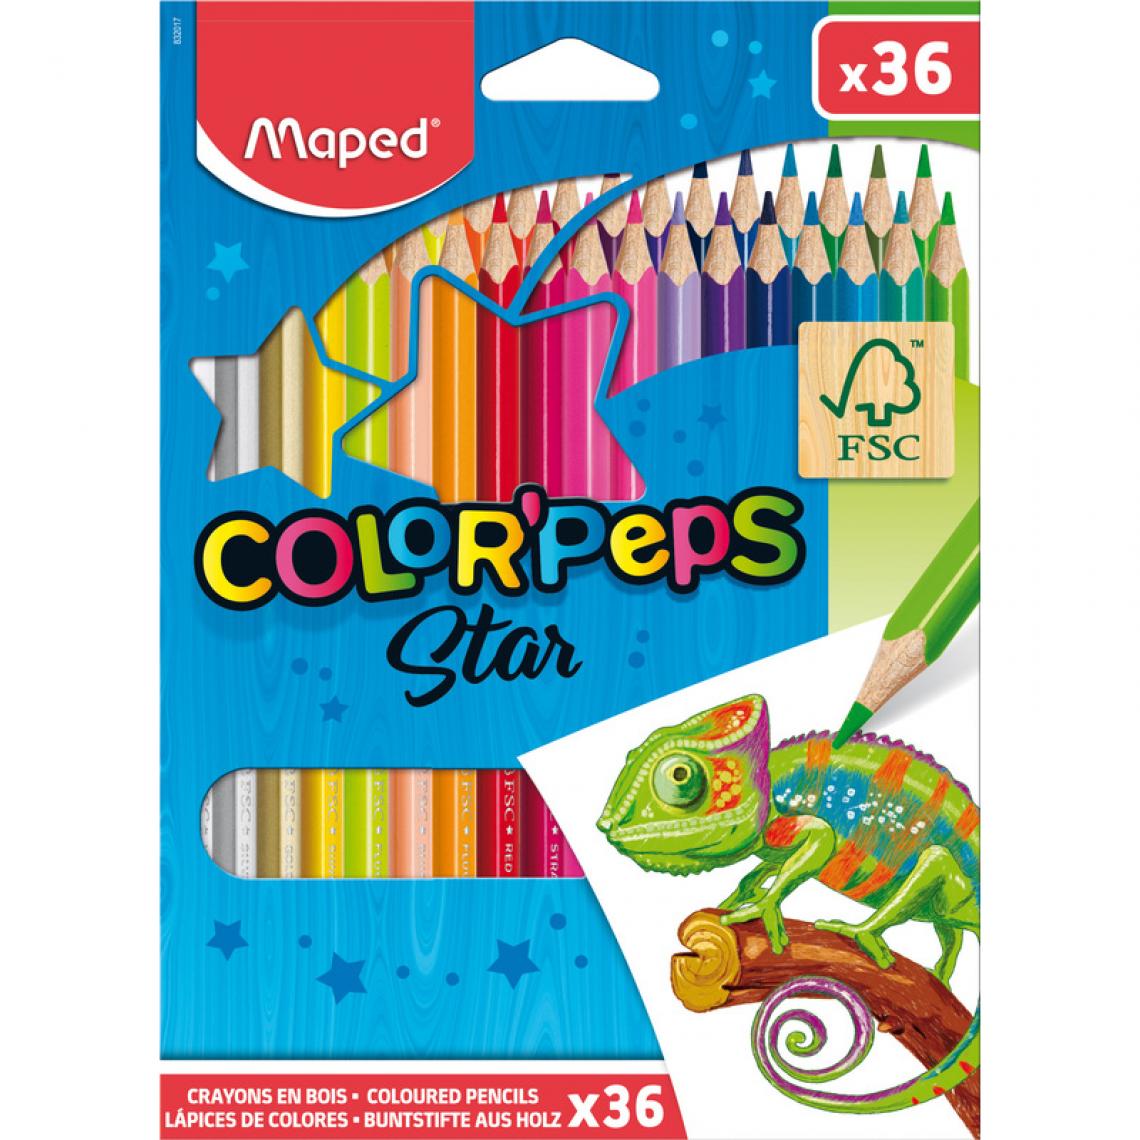 Maped - MAPED Crayon de couleur COLOR'PEPS Star, étui carton de 36 () - Bricolage et jardinage